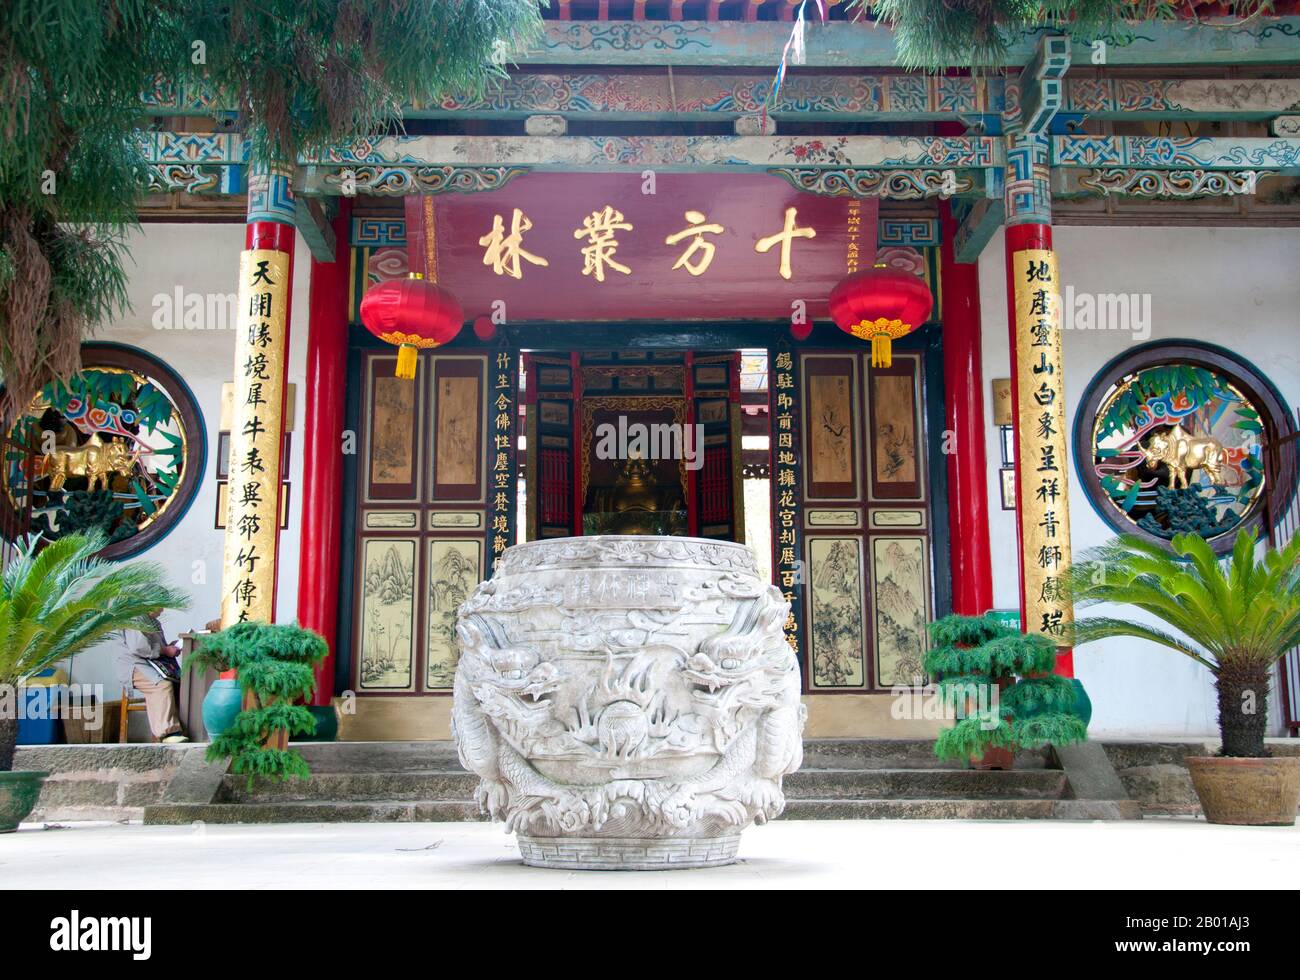 China: Eingang zum Qiongzhu Si (Bambustempel), nordwestlich von Kunming, Provinz Yunnan. Qiongzhu Si wurde ursprünglich während der Tang-Dynastie (618-907) erbaut, wurde aber während der Yuan-Dynastie (1271-1368) als erster Tempel, der dem Zen-Buddhismus in Yunnan gewidmet war, ordnungsgemäß errichtet. Der Tempel ist berühmt für seine 500 bemalten Arhats, die während der Herrschaft des Qing-Imperators Guangxu (1875-1909) vom Bildhauer Li Guangxiu geschaffen wurden. Stockfoto